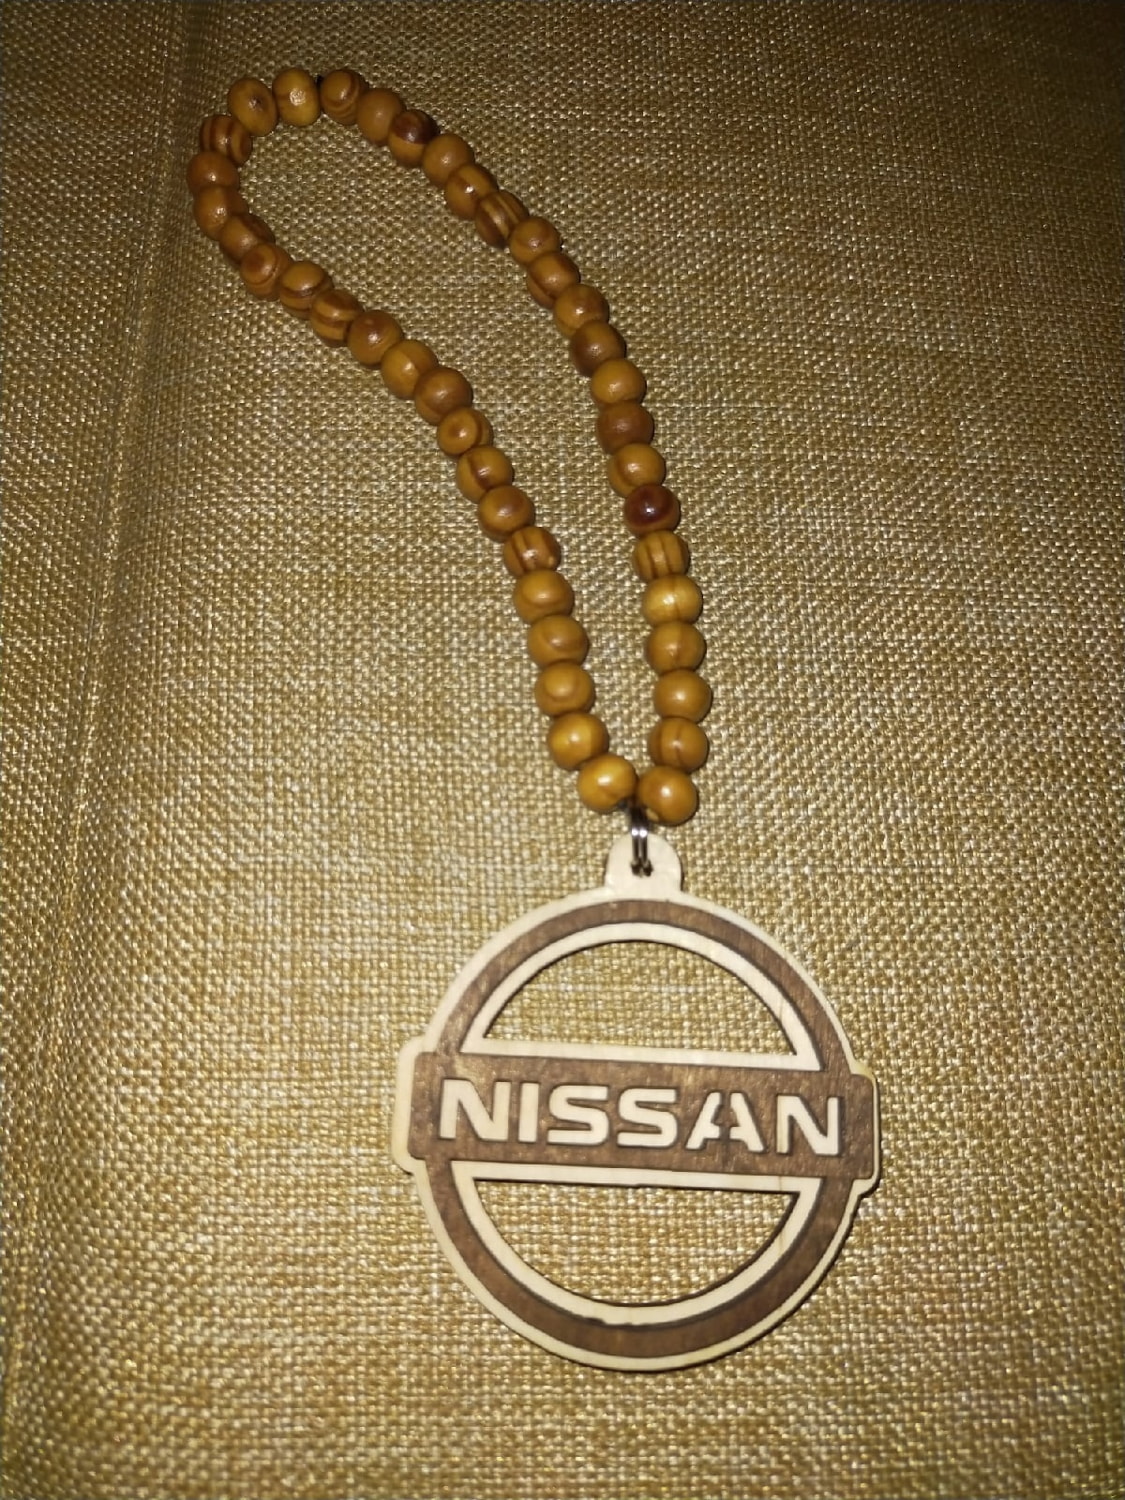 Portachiavi Nissan con taglio laser Portachiavi in legno con logo Nissan